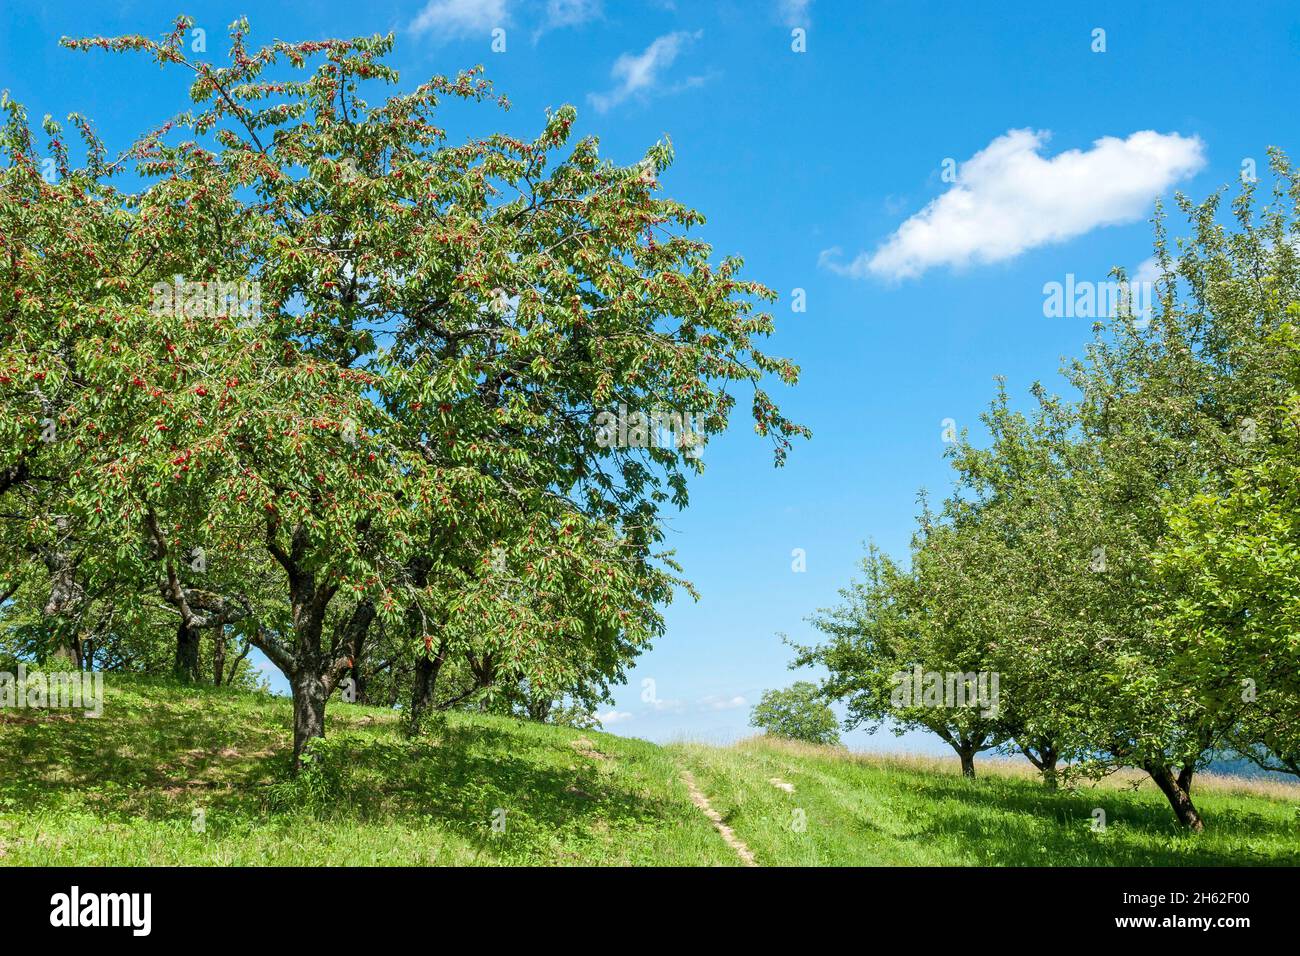 deutschland,baden-württemberg,beuren,Kirschbaum mit reifen Kirschen auf einer Obstwiese im neuffener Tal. Stockfoto